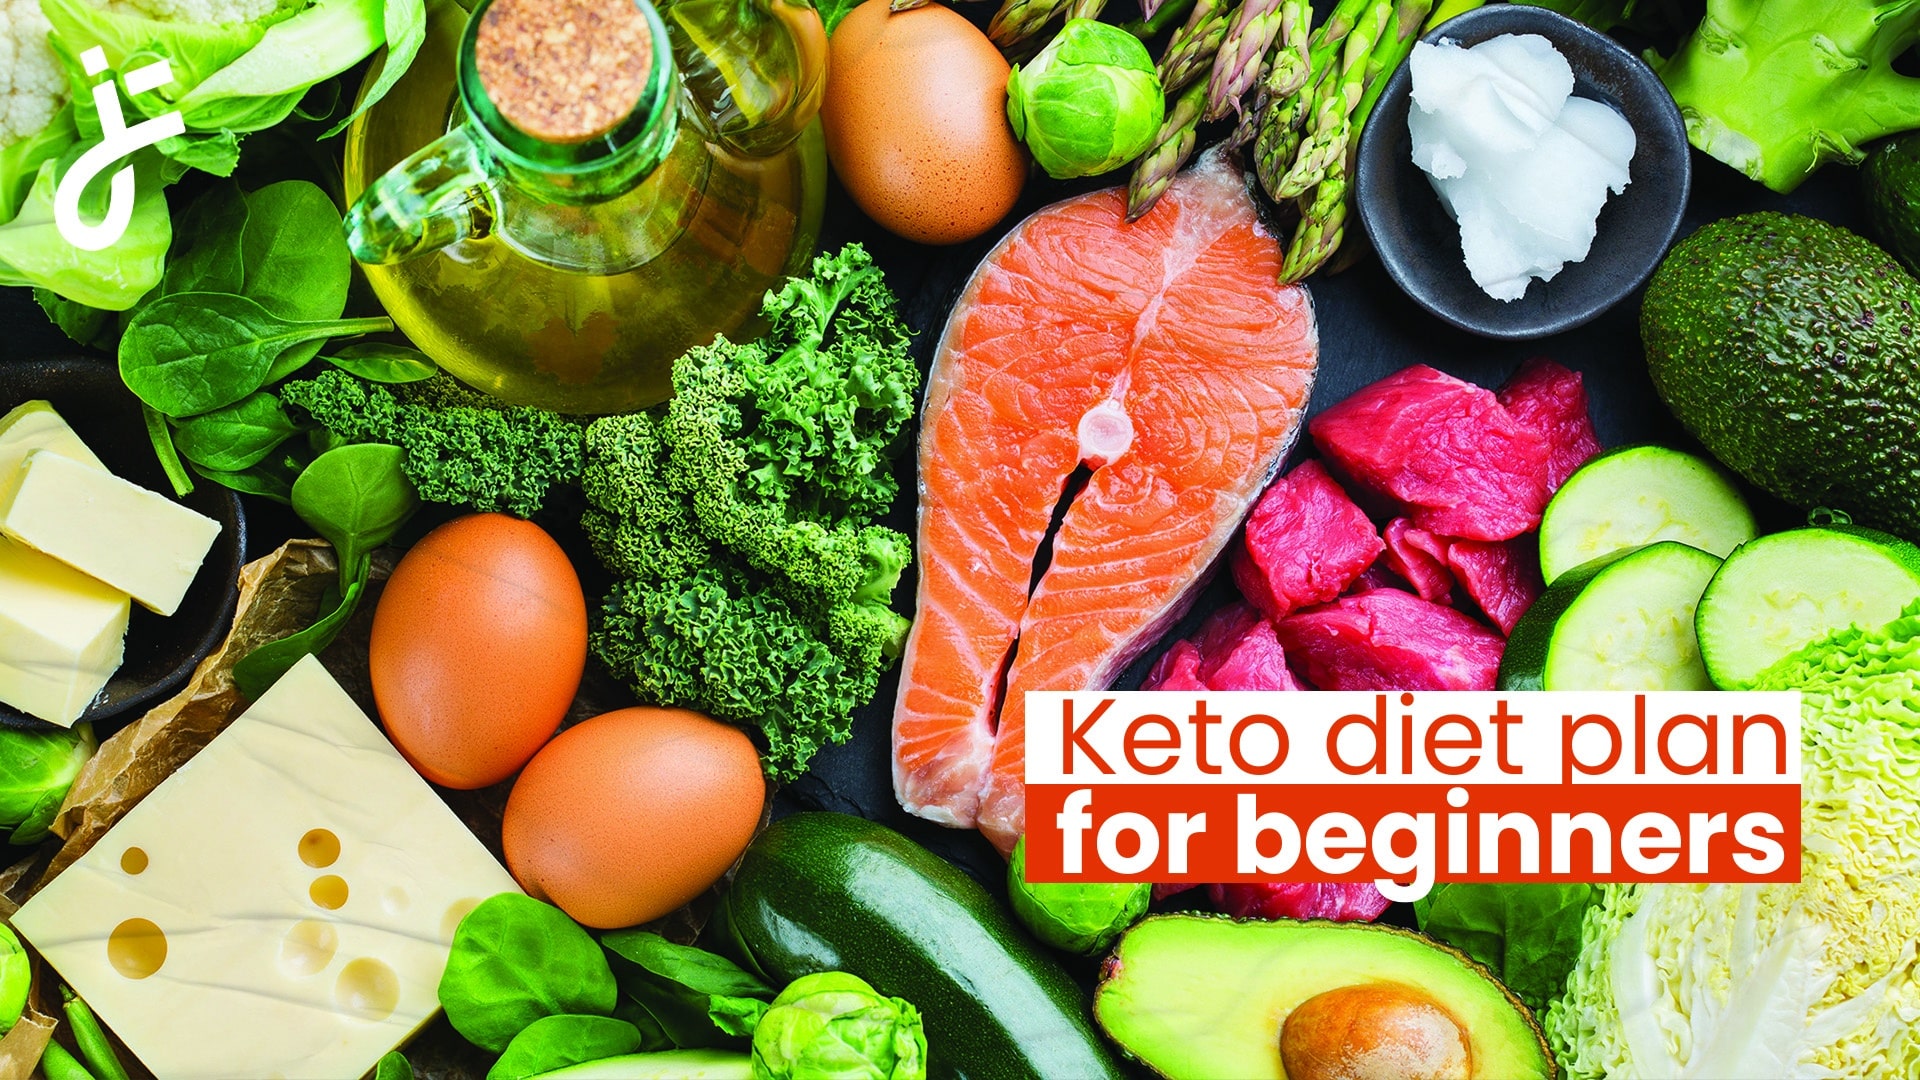 Keto diet plan for beginners